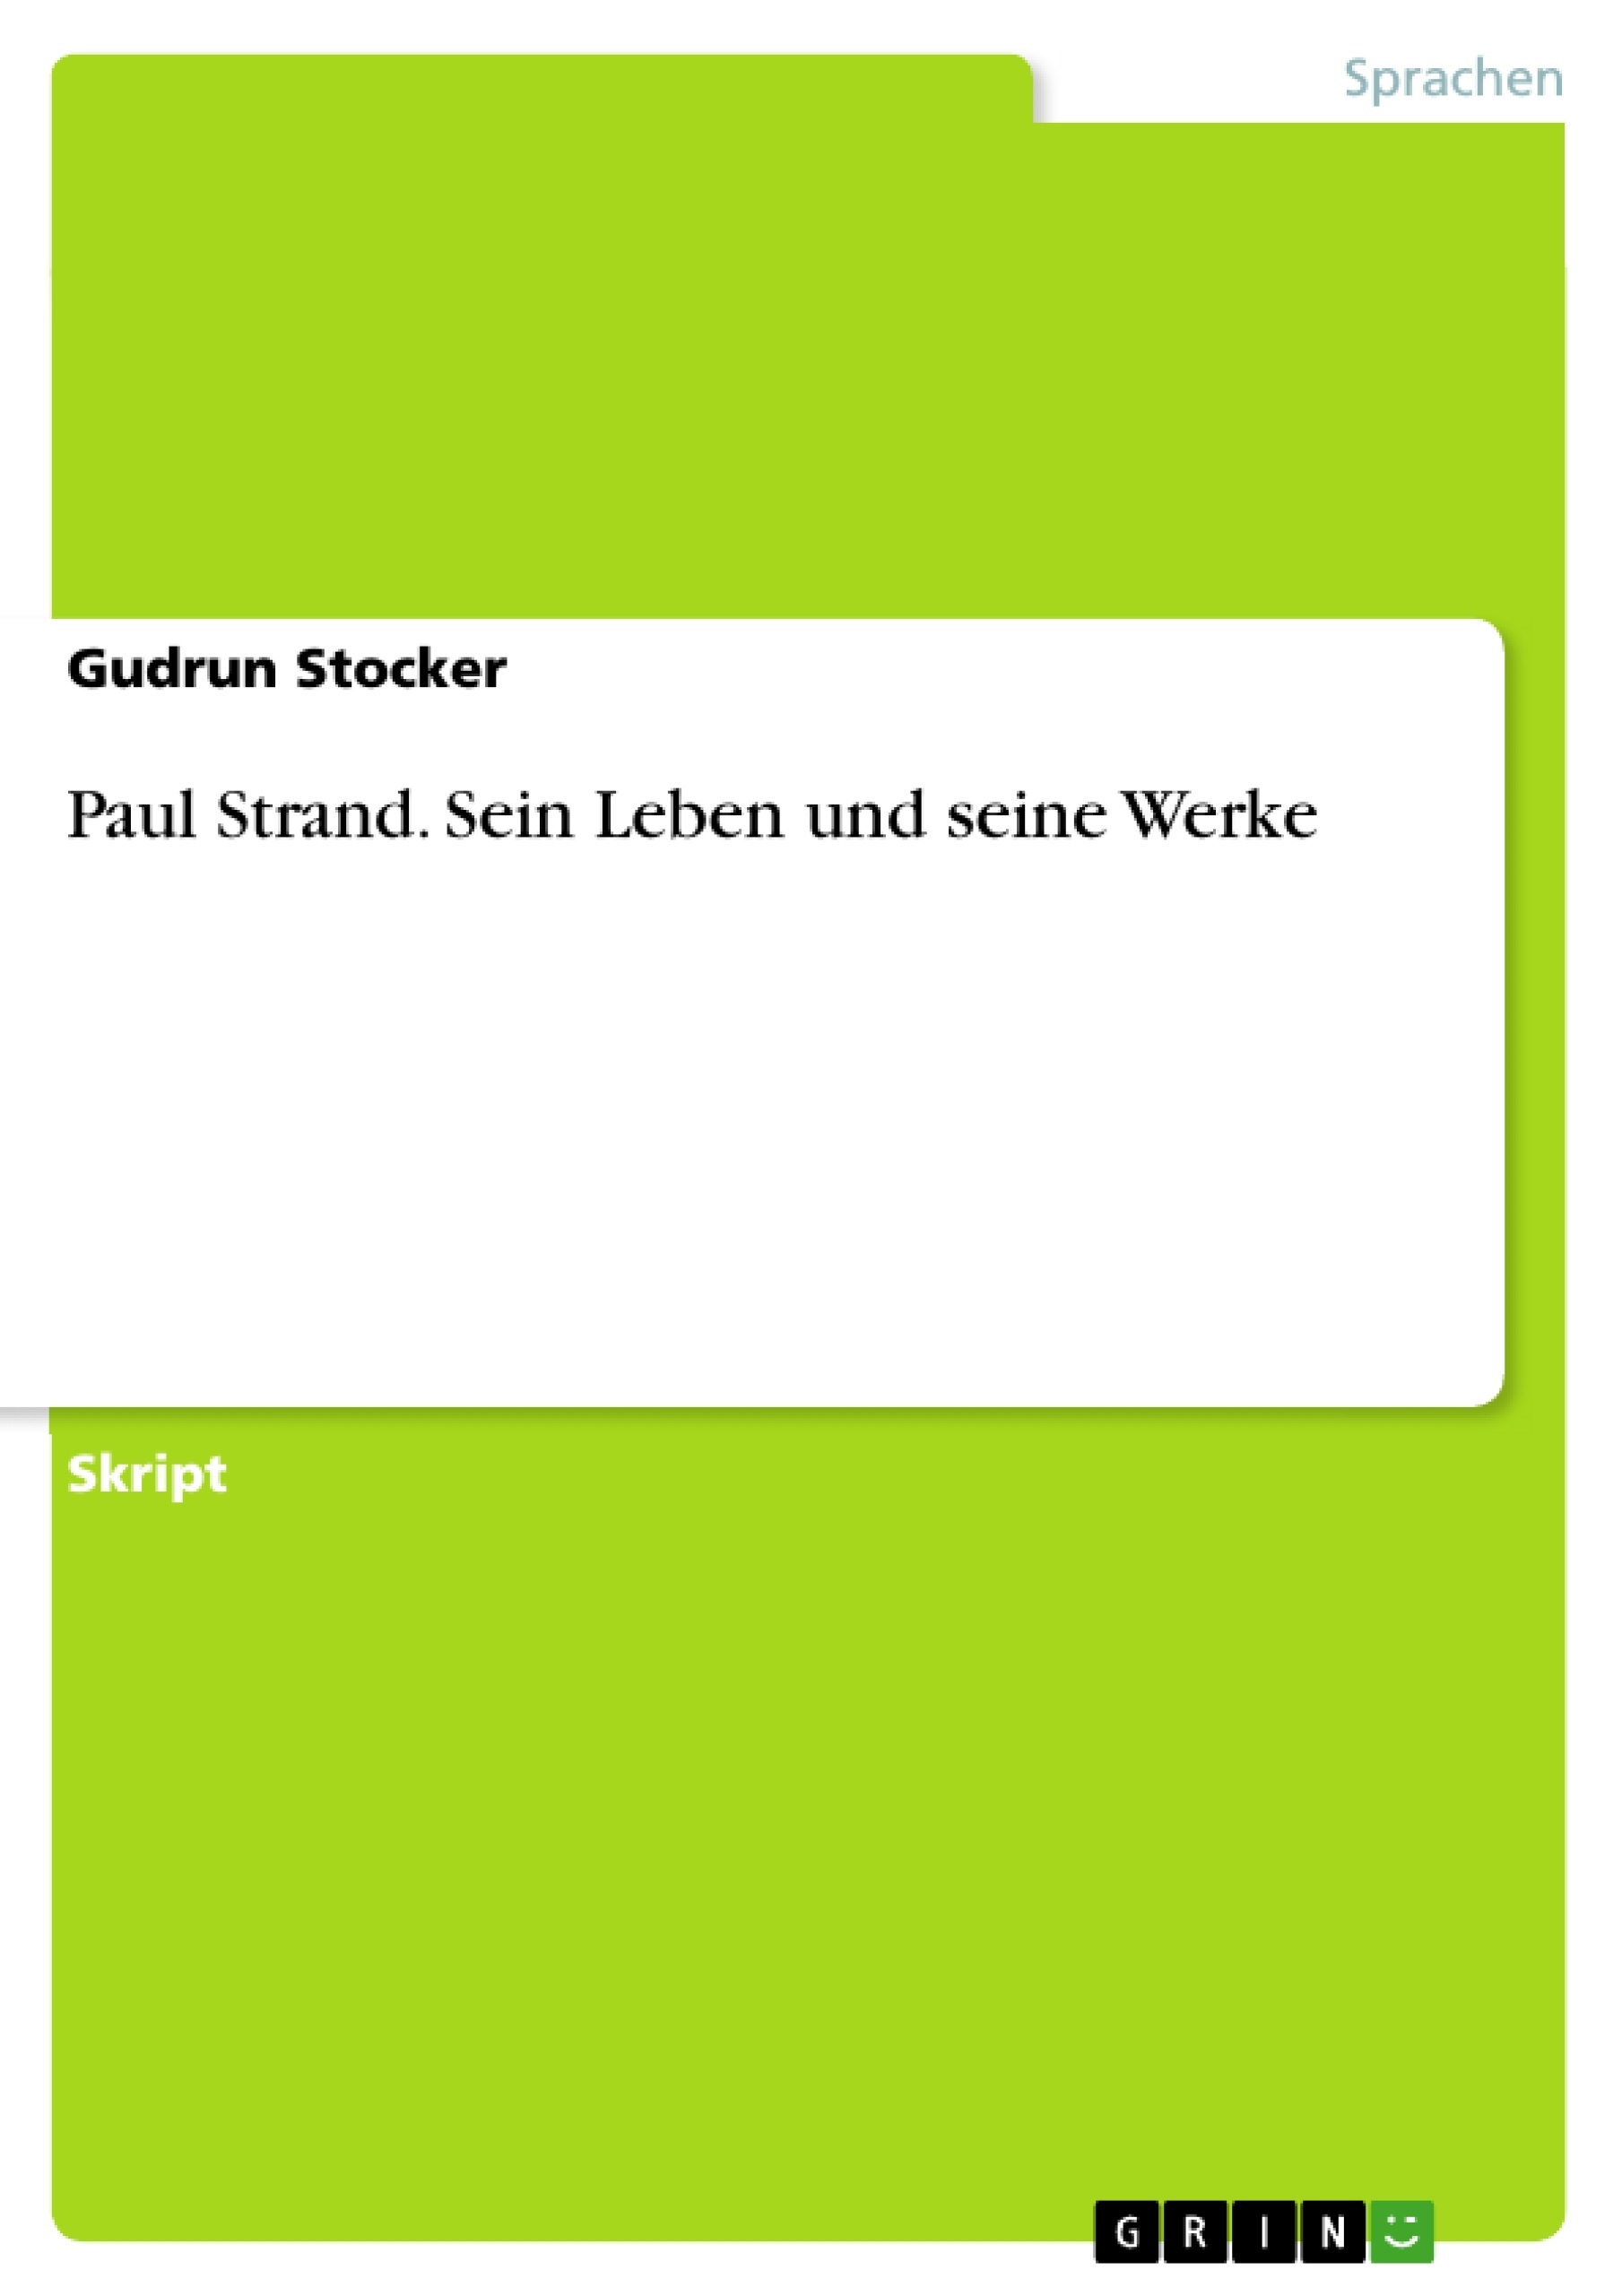 Título: Paul Strand. Sein Leben und seine Werke